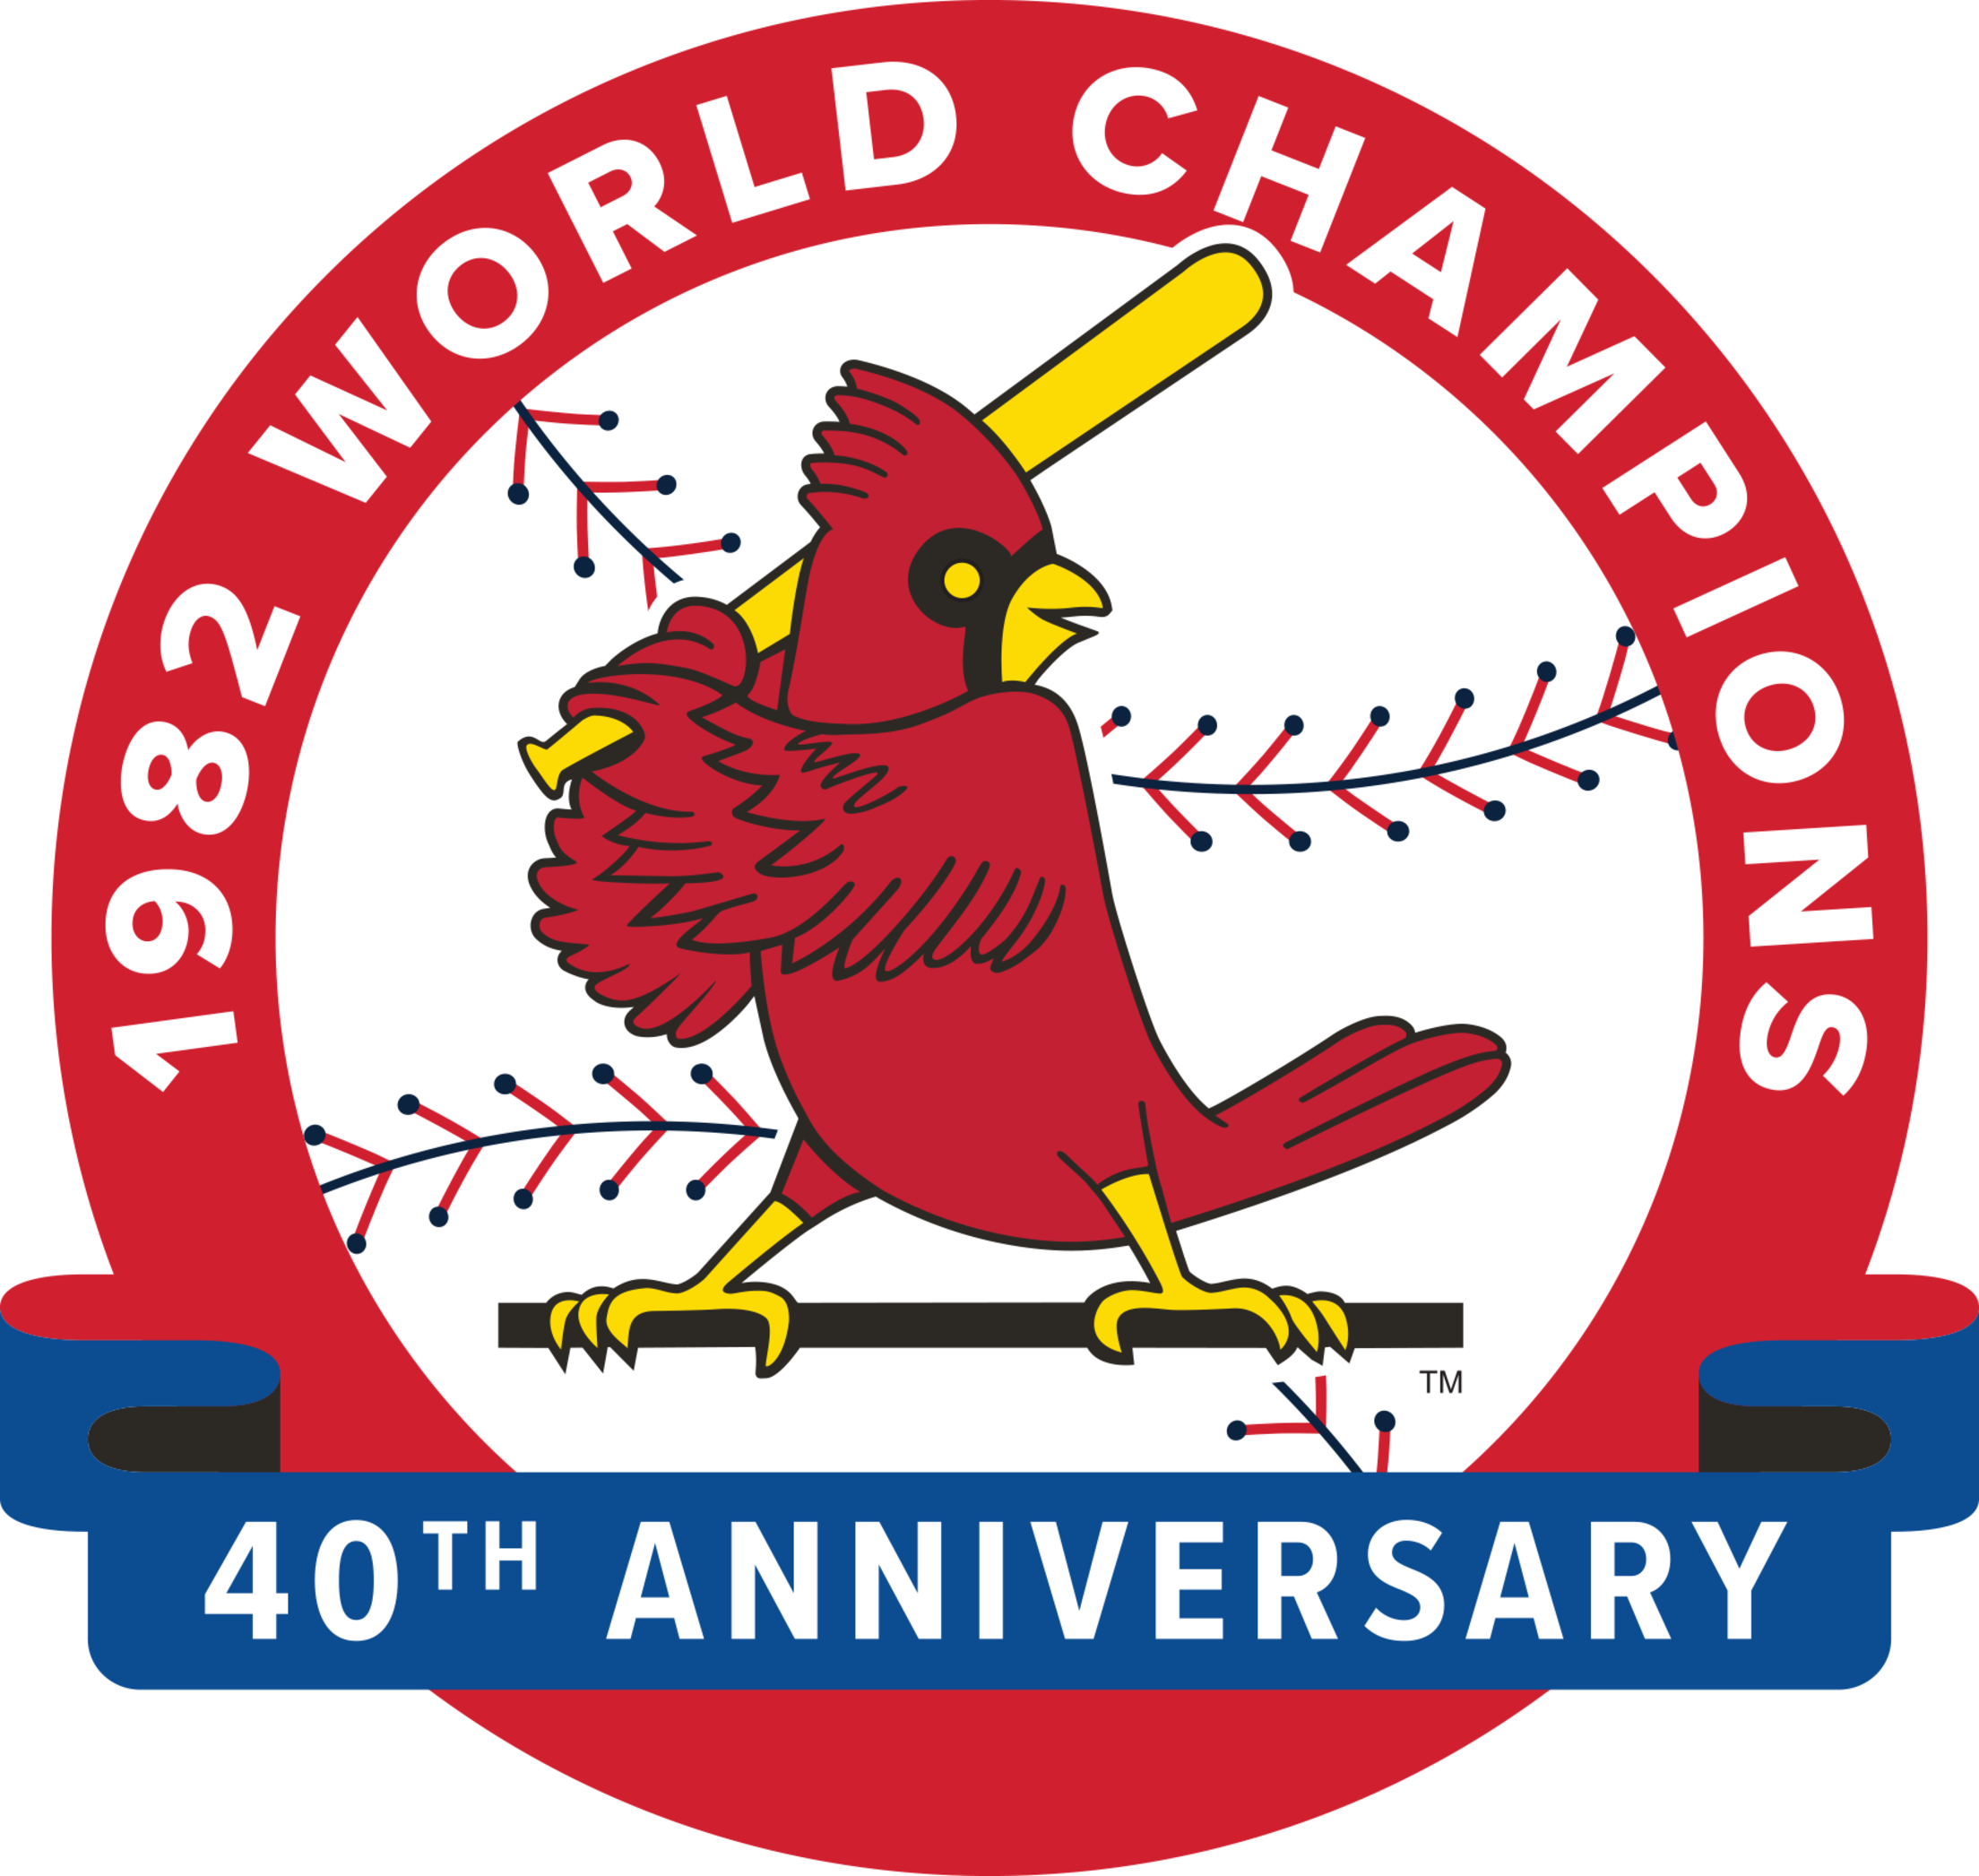 1982 St. Louis Cardinals Baseball Pocket Schedule – Budweiser #S348